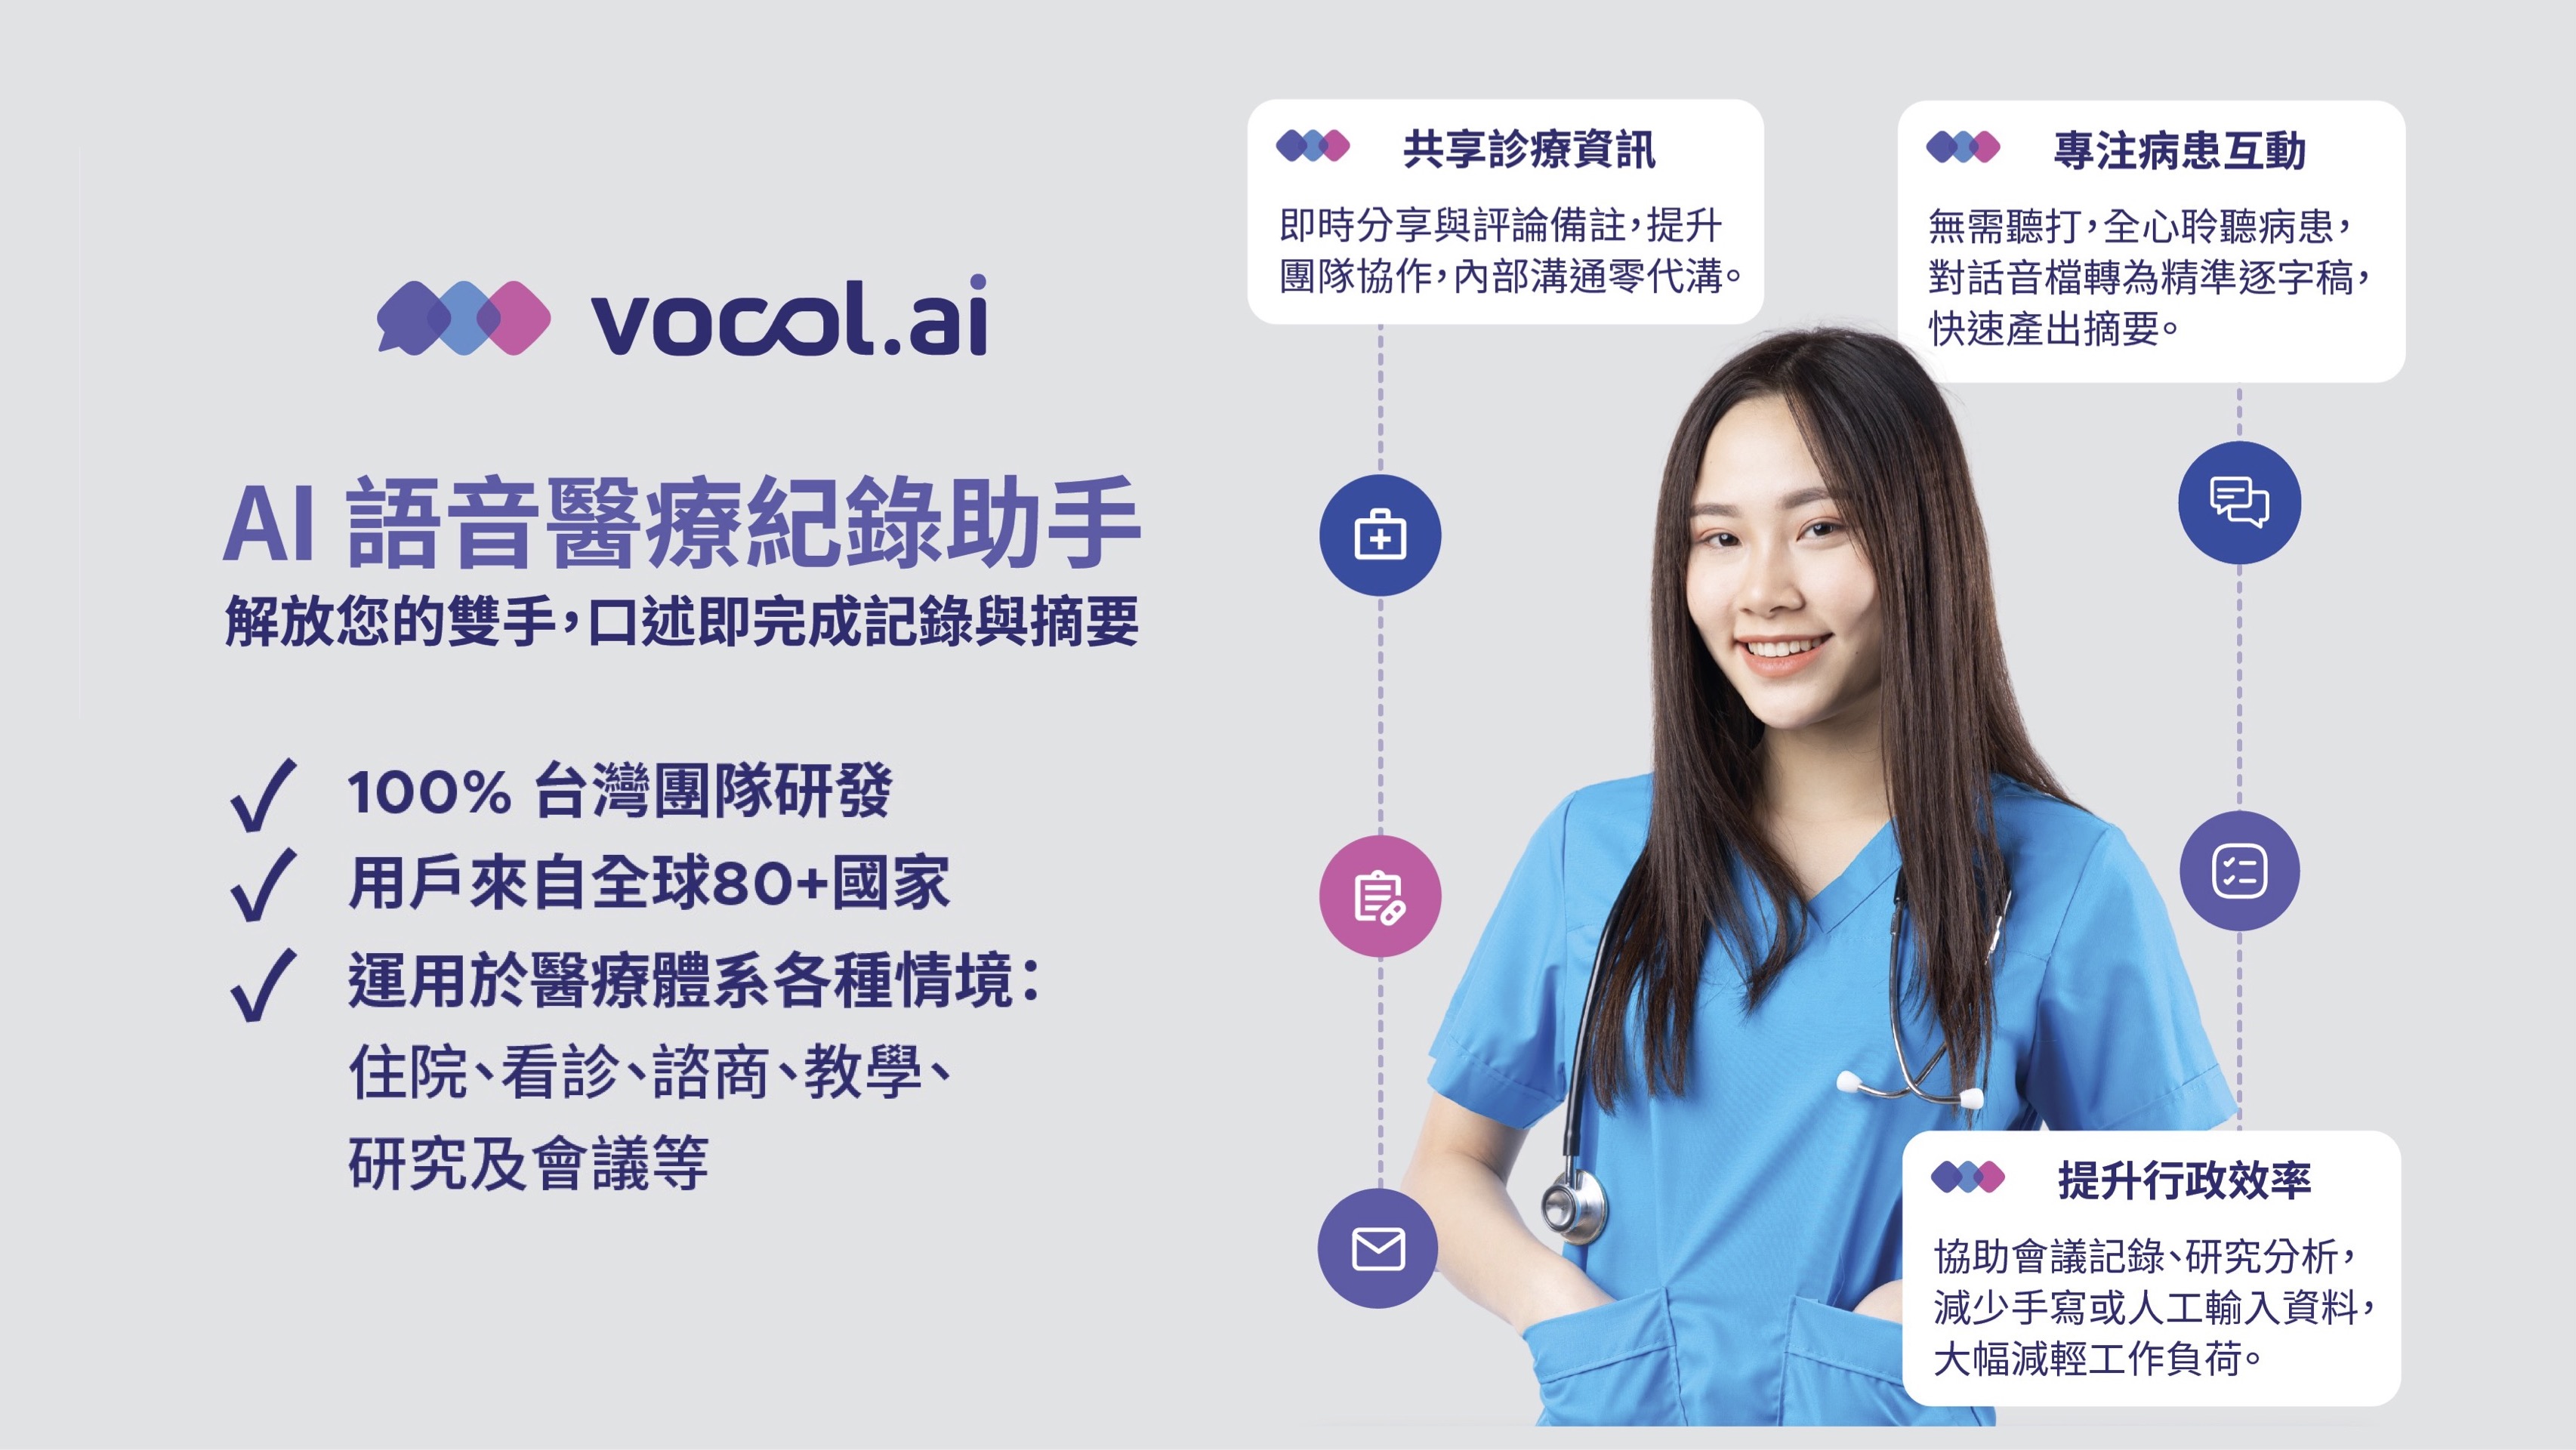 vocol.ai - AI 語音醫療記錄助手